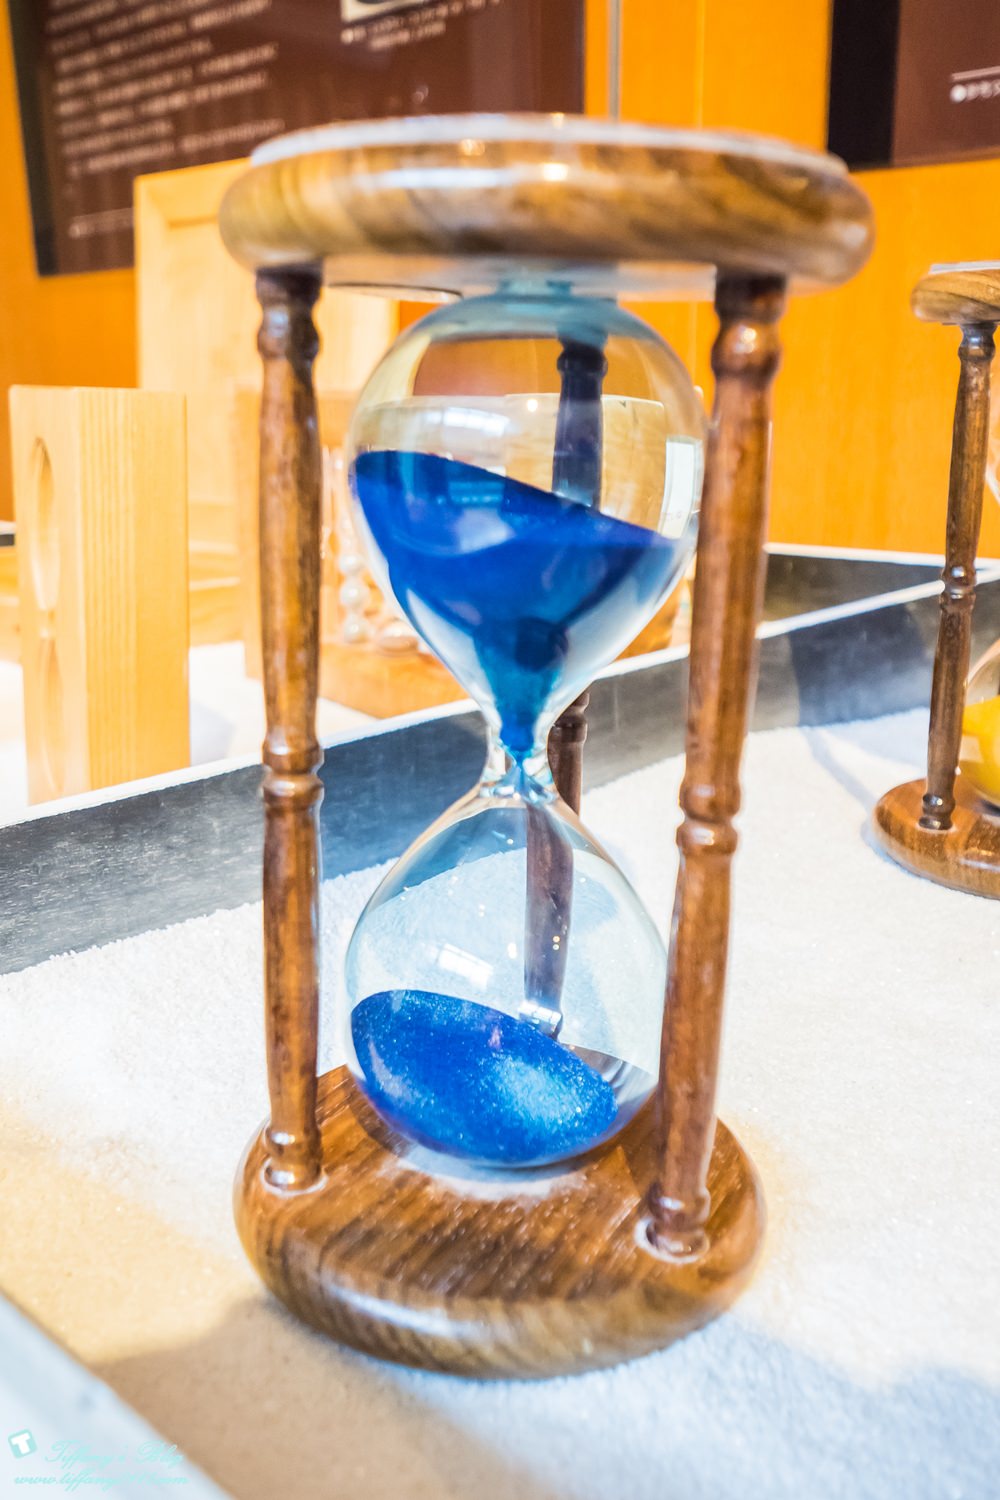 [日本‧島根]仁摩砂之博物館/砂時計/全世界最大的砂曆/推薦親子旅遊DIY體驗必去